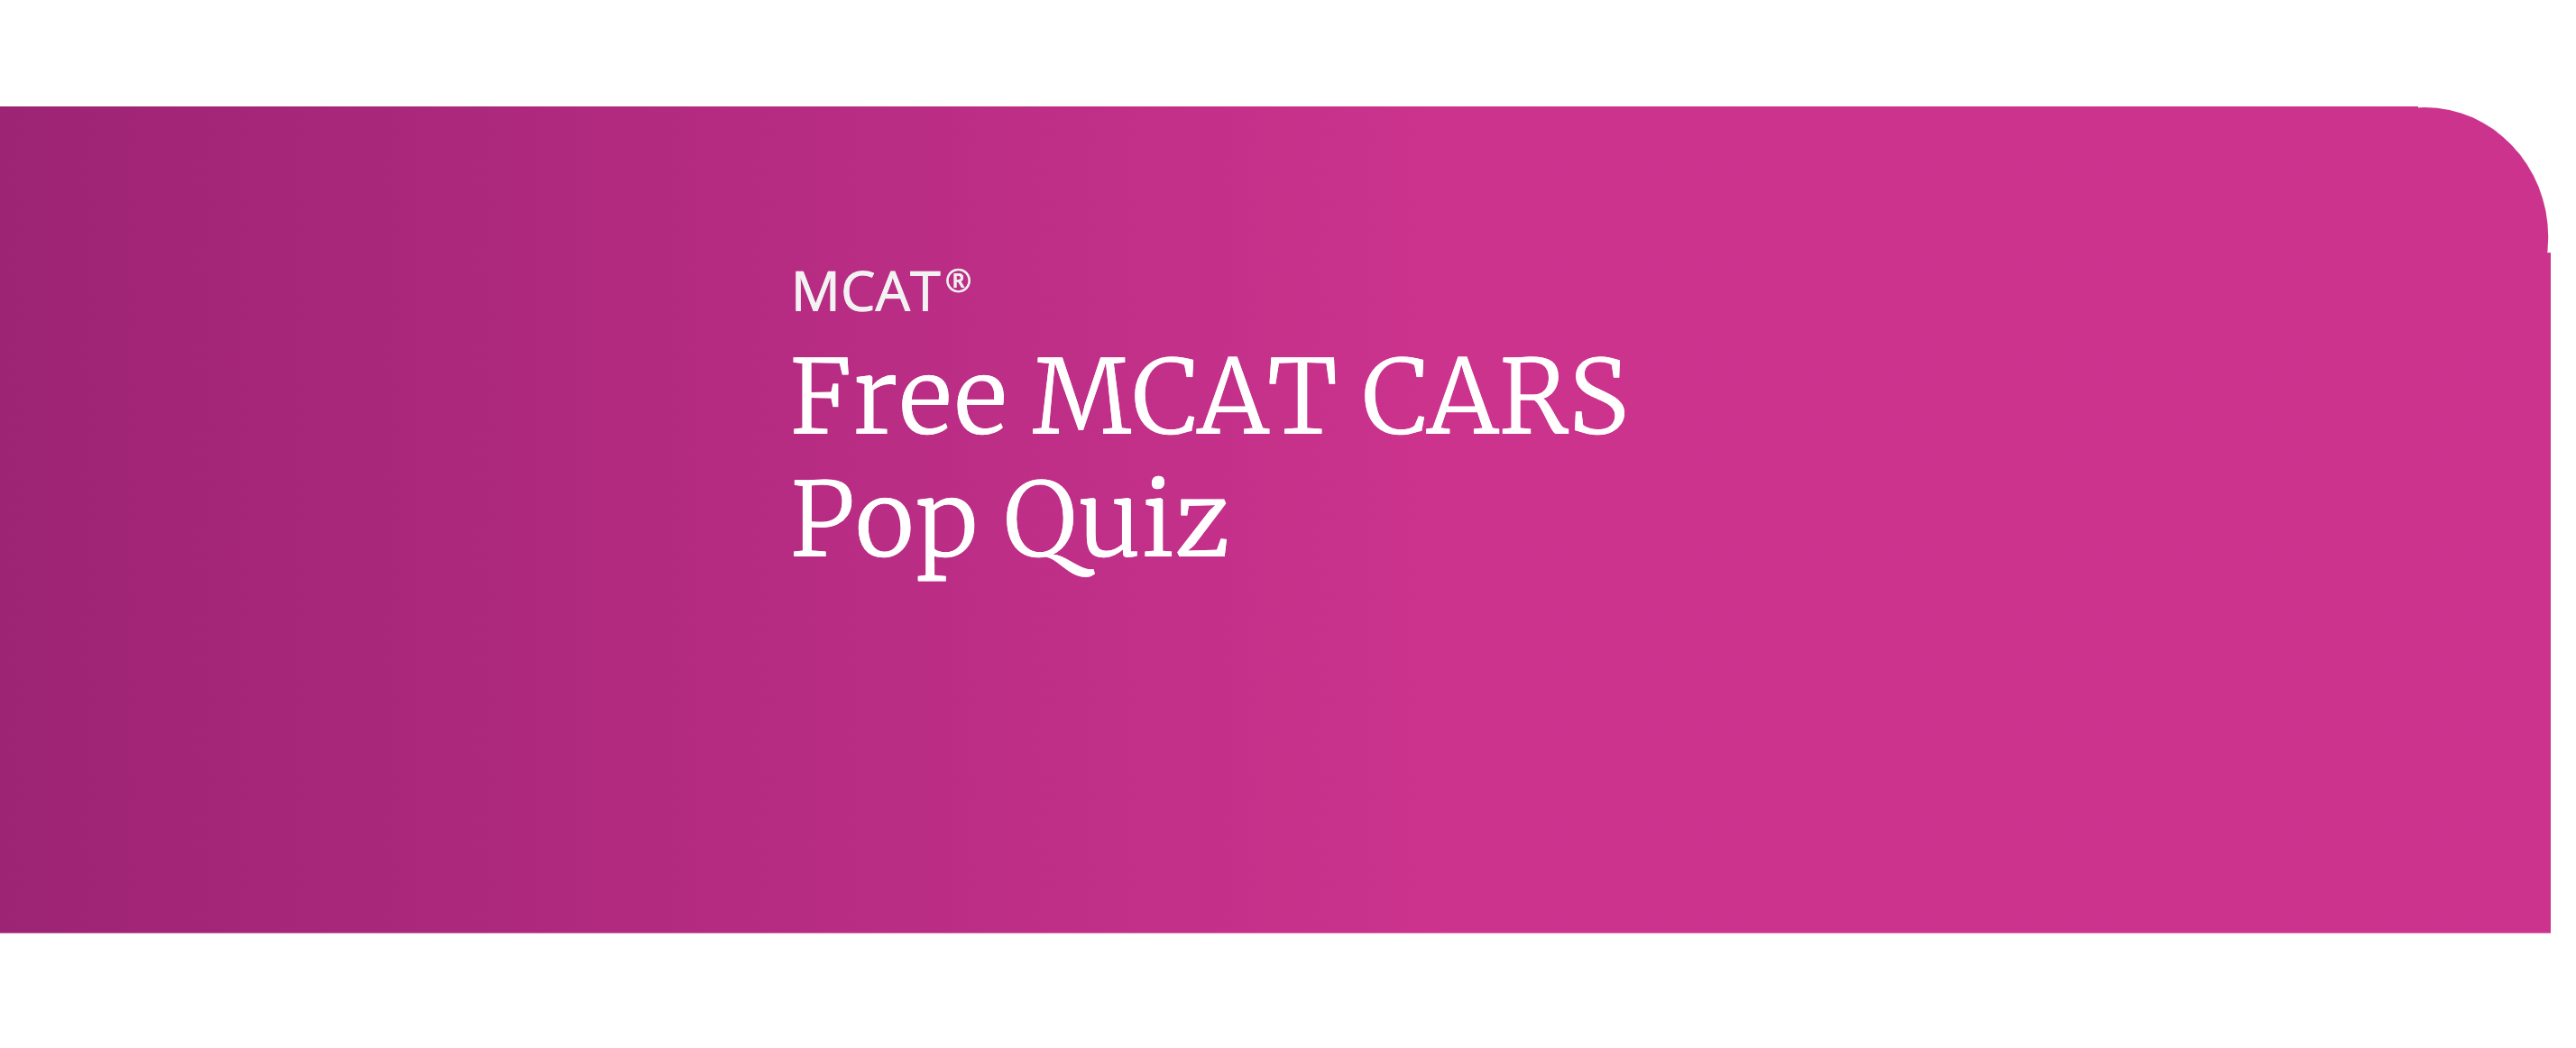 MCAT CARS Pop Quiz